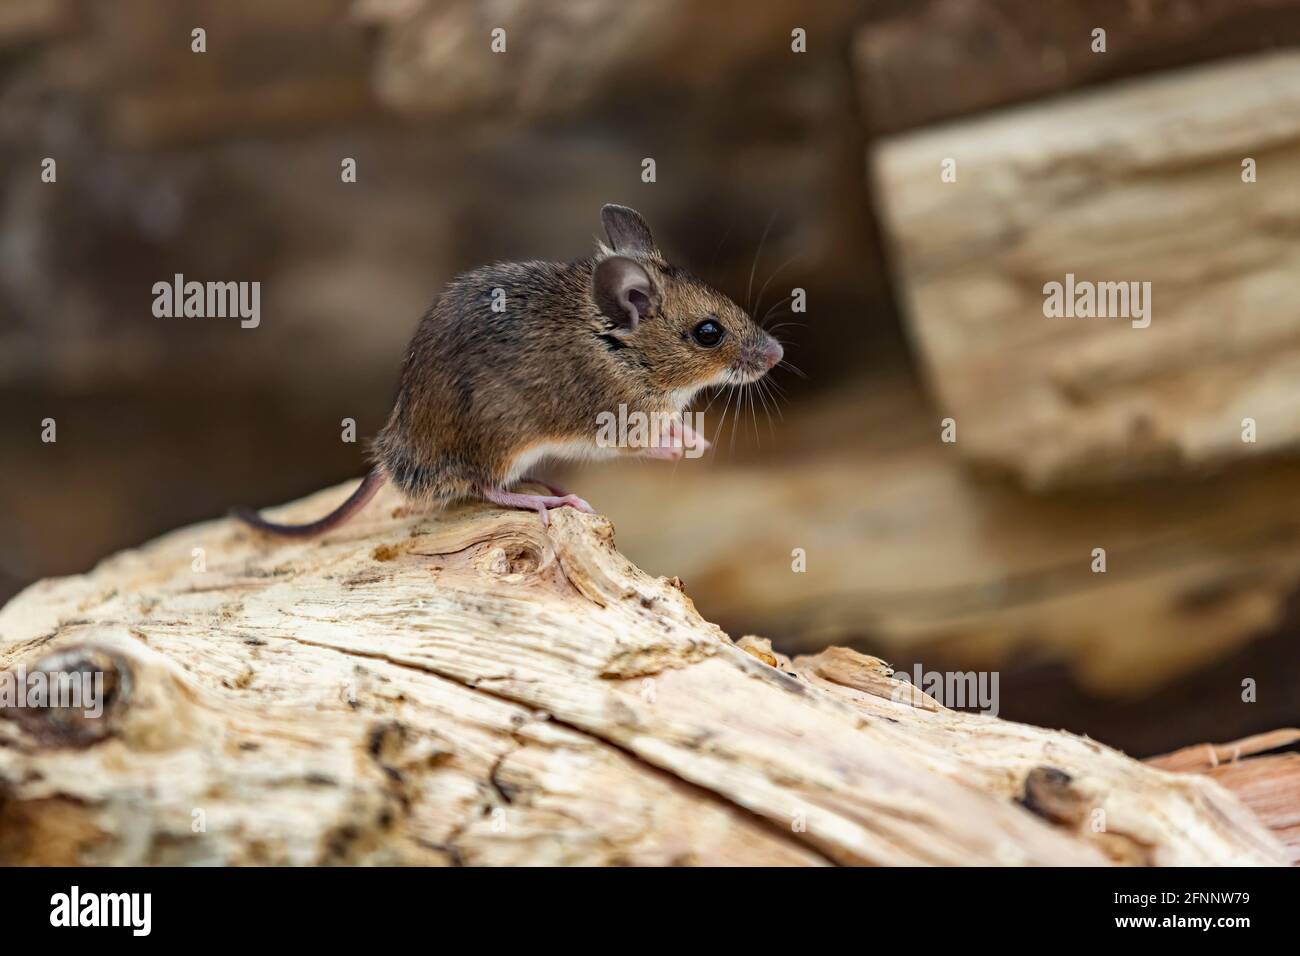 Souris de champ. Apodemus sylavaticus également appelé souris en bois, Northampton, Angleterre, Royaume-Uni. Banque D'Images